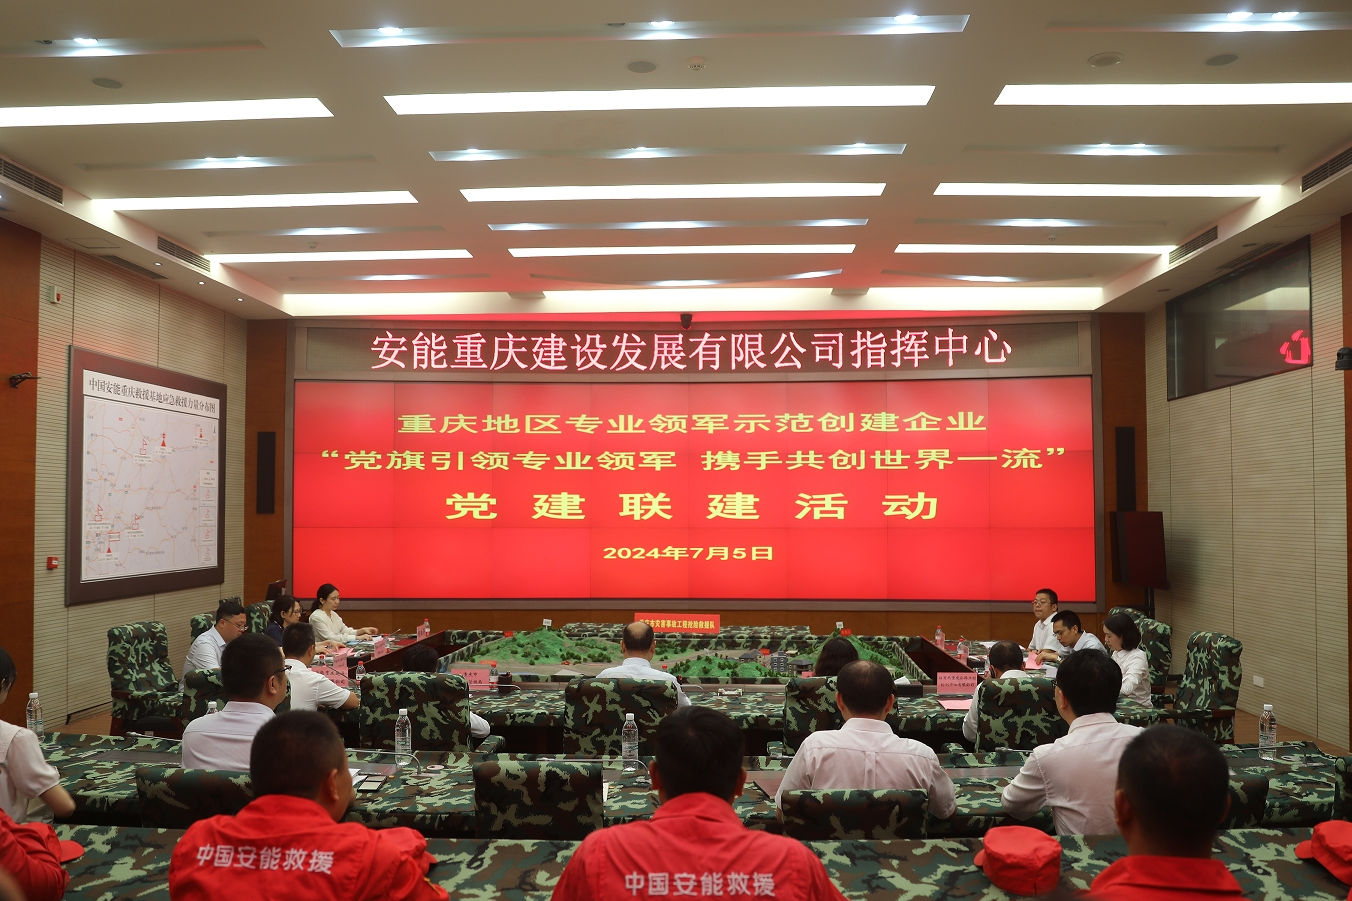 重庆地区世界一流专业领军示范创建企业开展党建联建活动